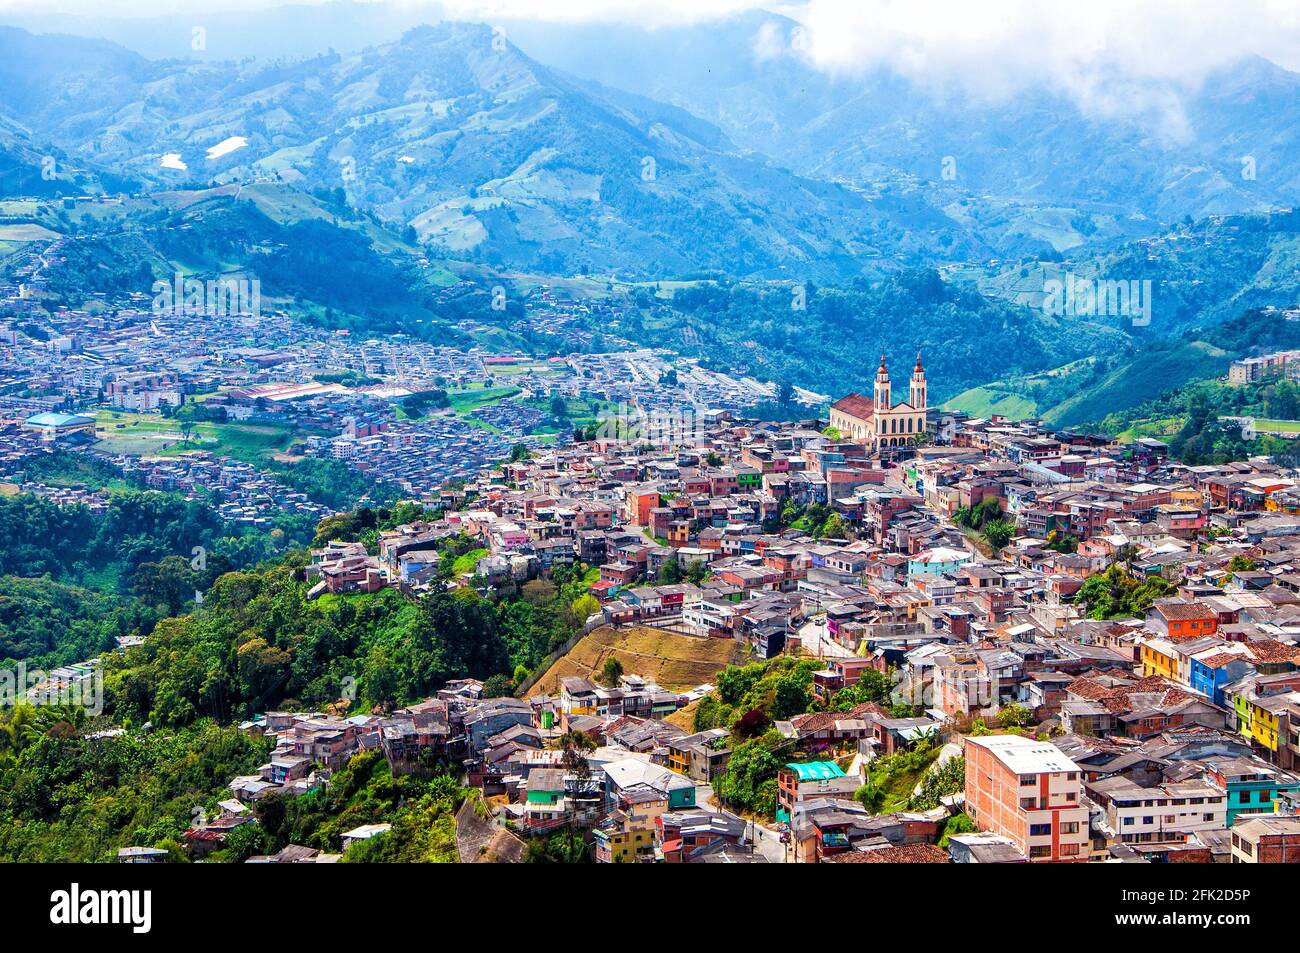 Vue panoramique sur la ville, ses maisons, l'église et les montagnes. Manizales, Caldas, Colombie. Banque D'Images